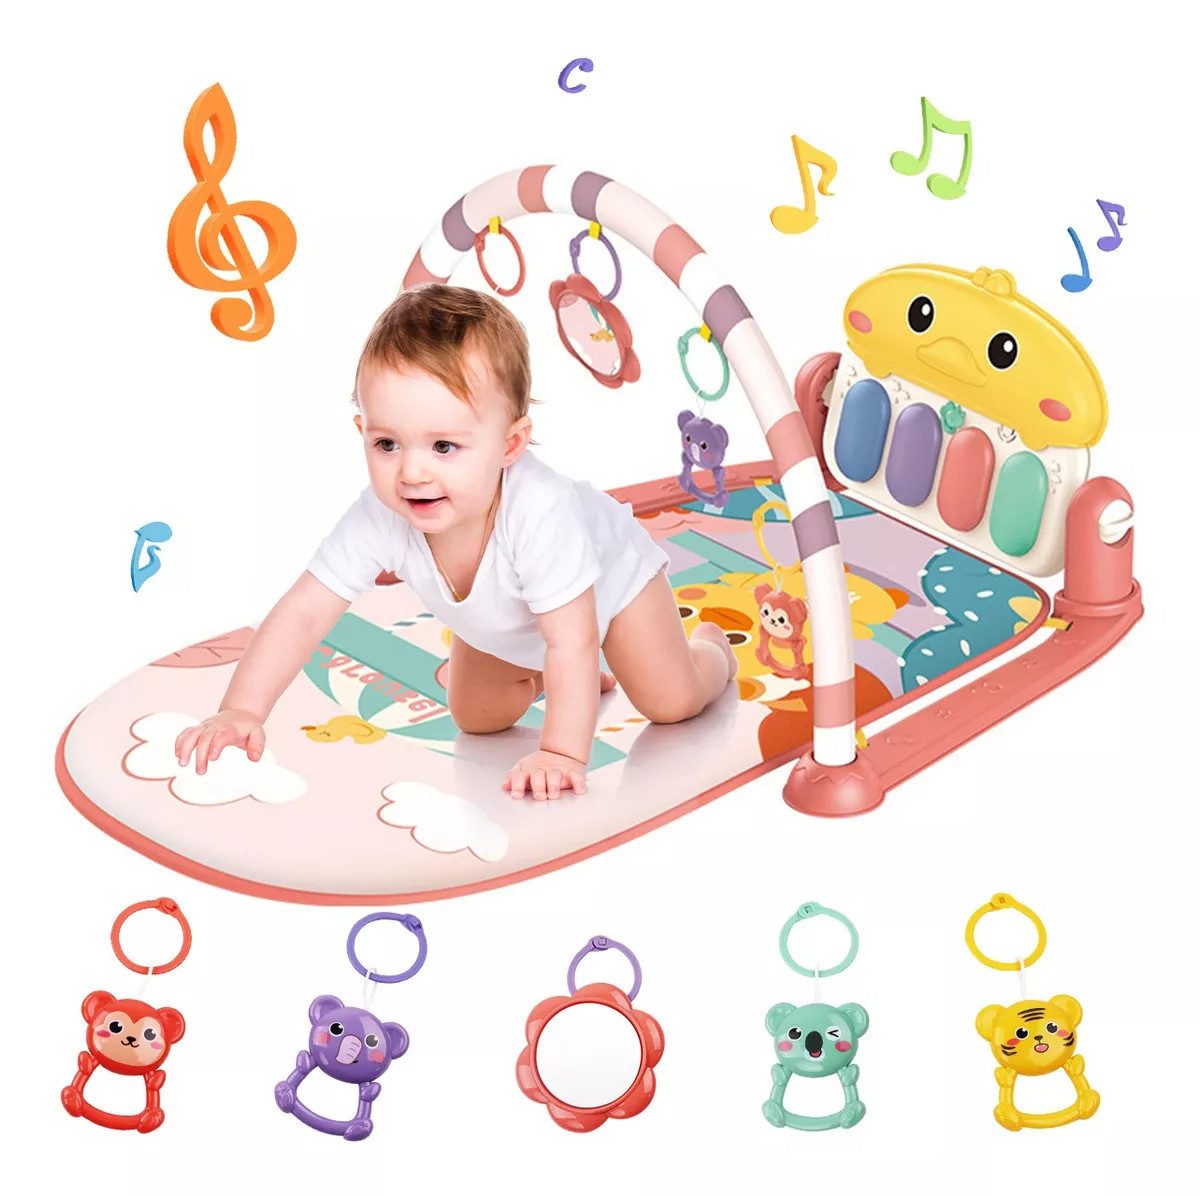 Krabbeldecke Spielmatte Spielbogen Baby Lernmatte Musik Spieldecke Erlebnisdecke, Cbei, 5 hängende und abnehmbare Spielzeuge, darunter Sicherheitsspiegel